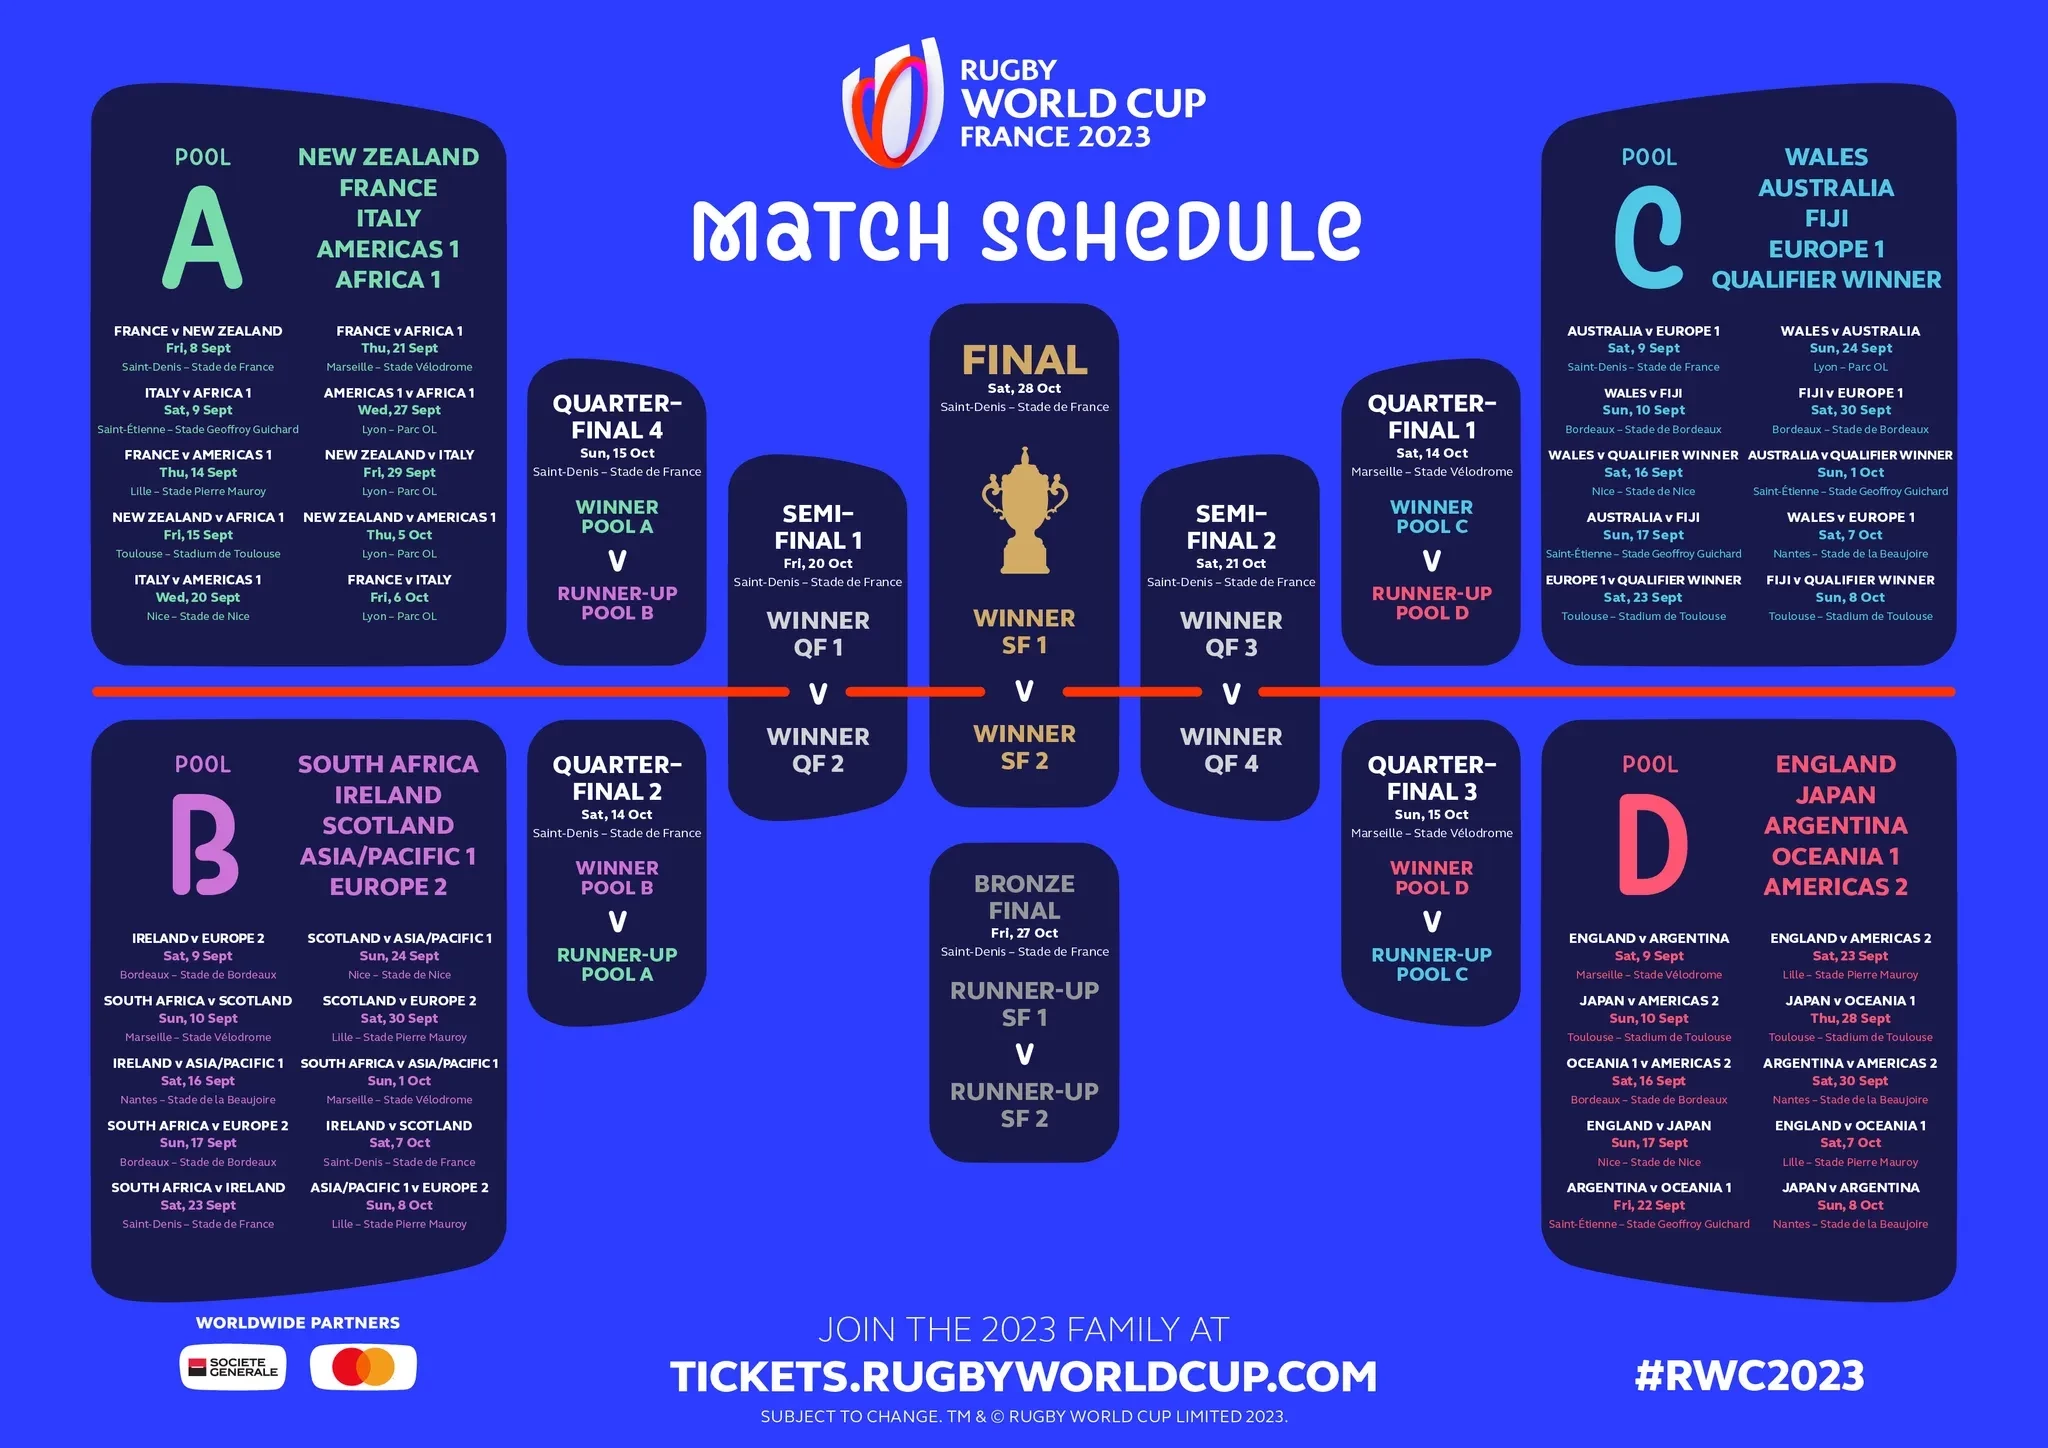 Le calendrier des matches de la Coupe du monde de rugby 2023 est publié en France © World Rugby